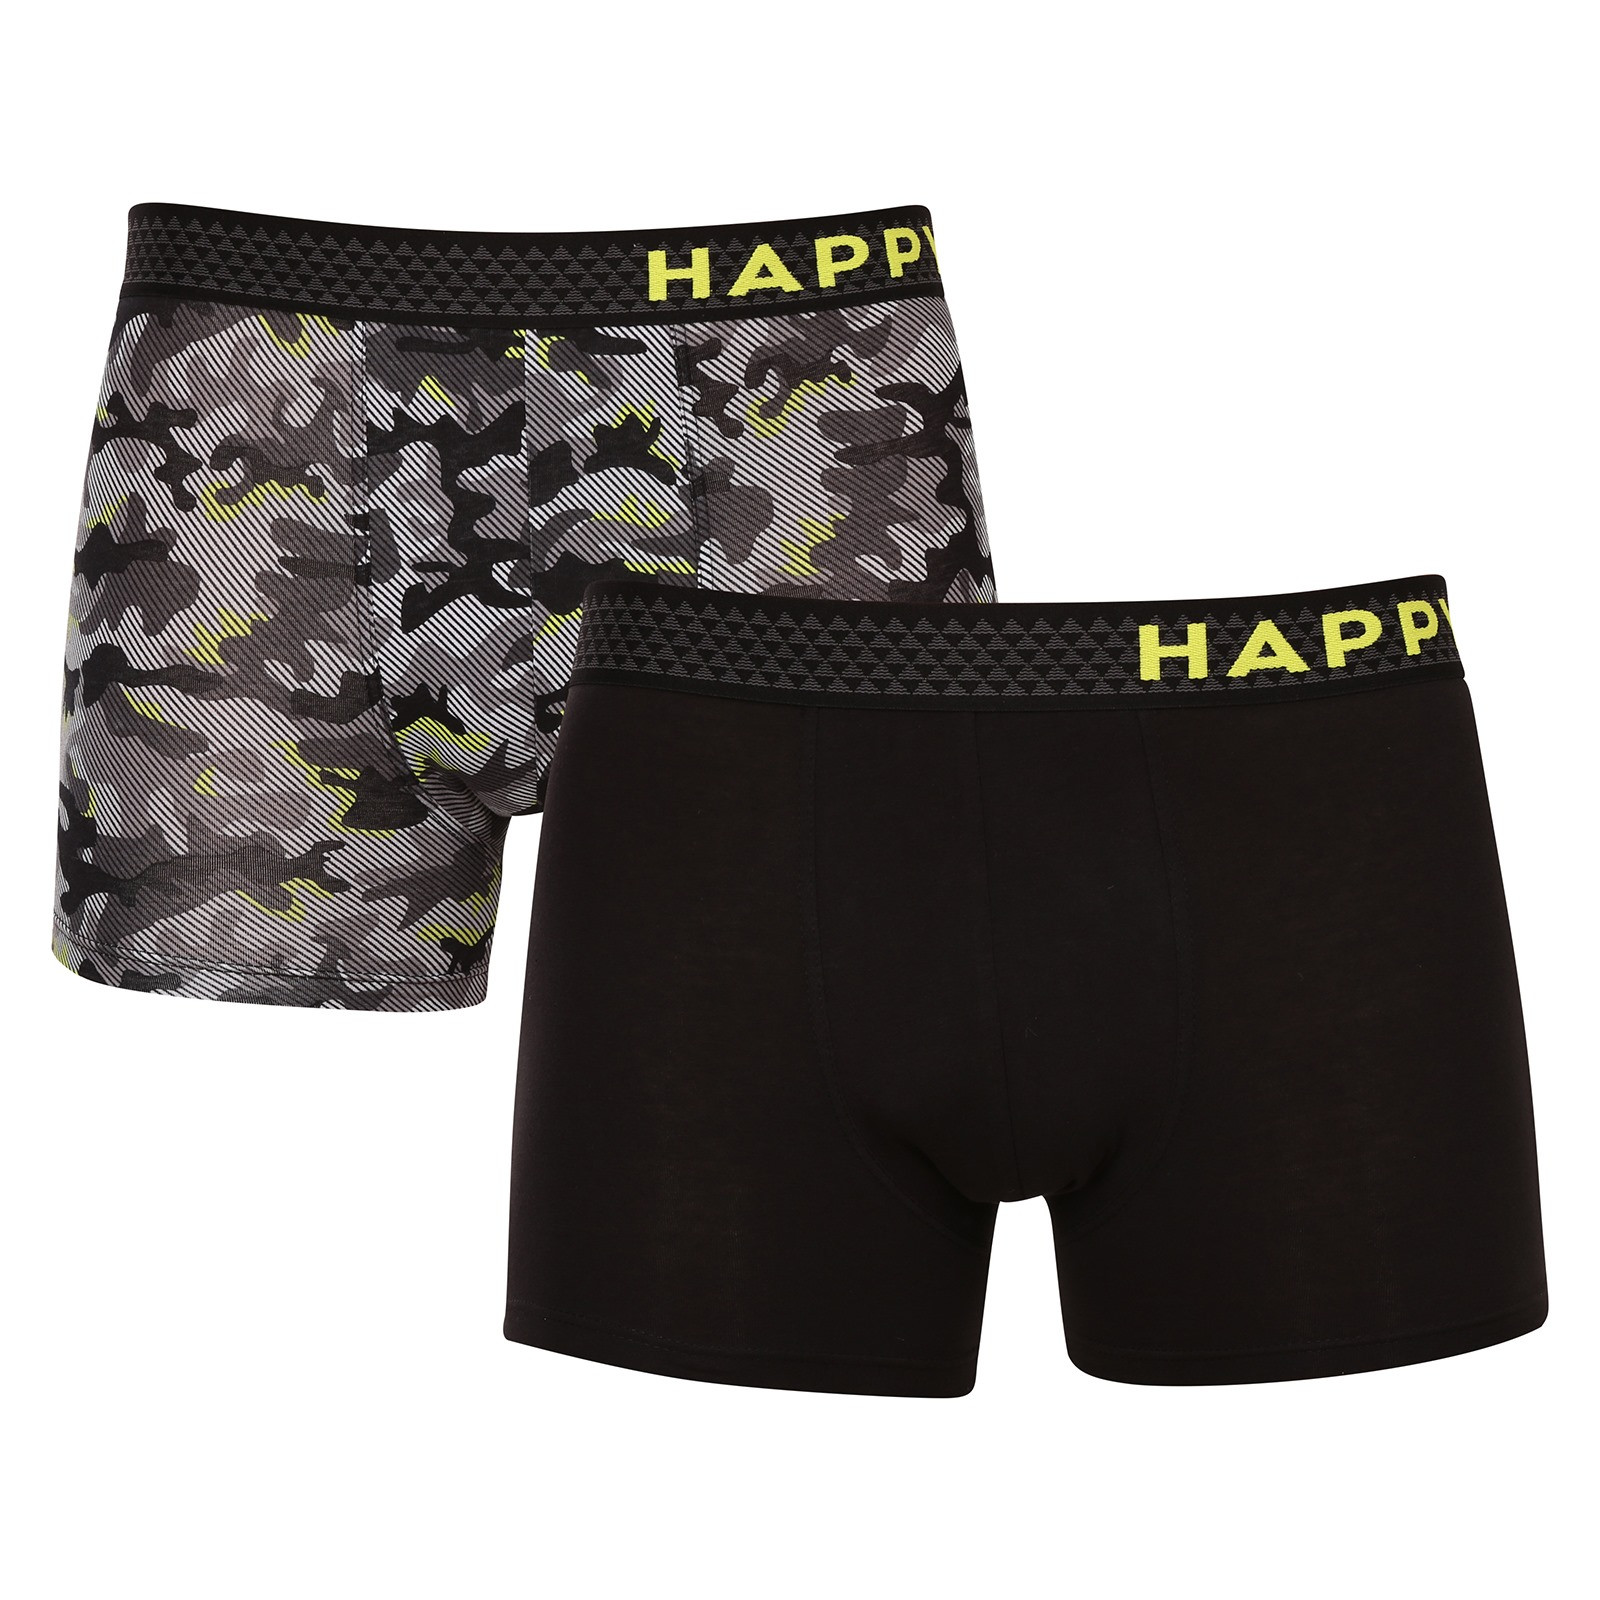 E-shop 2PACK pánské boxerky Happy Shorts vícebarevné